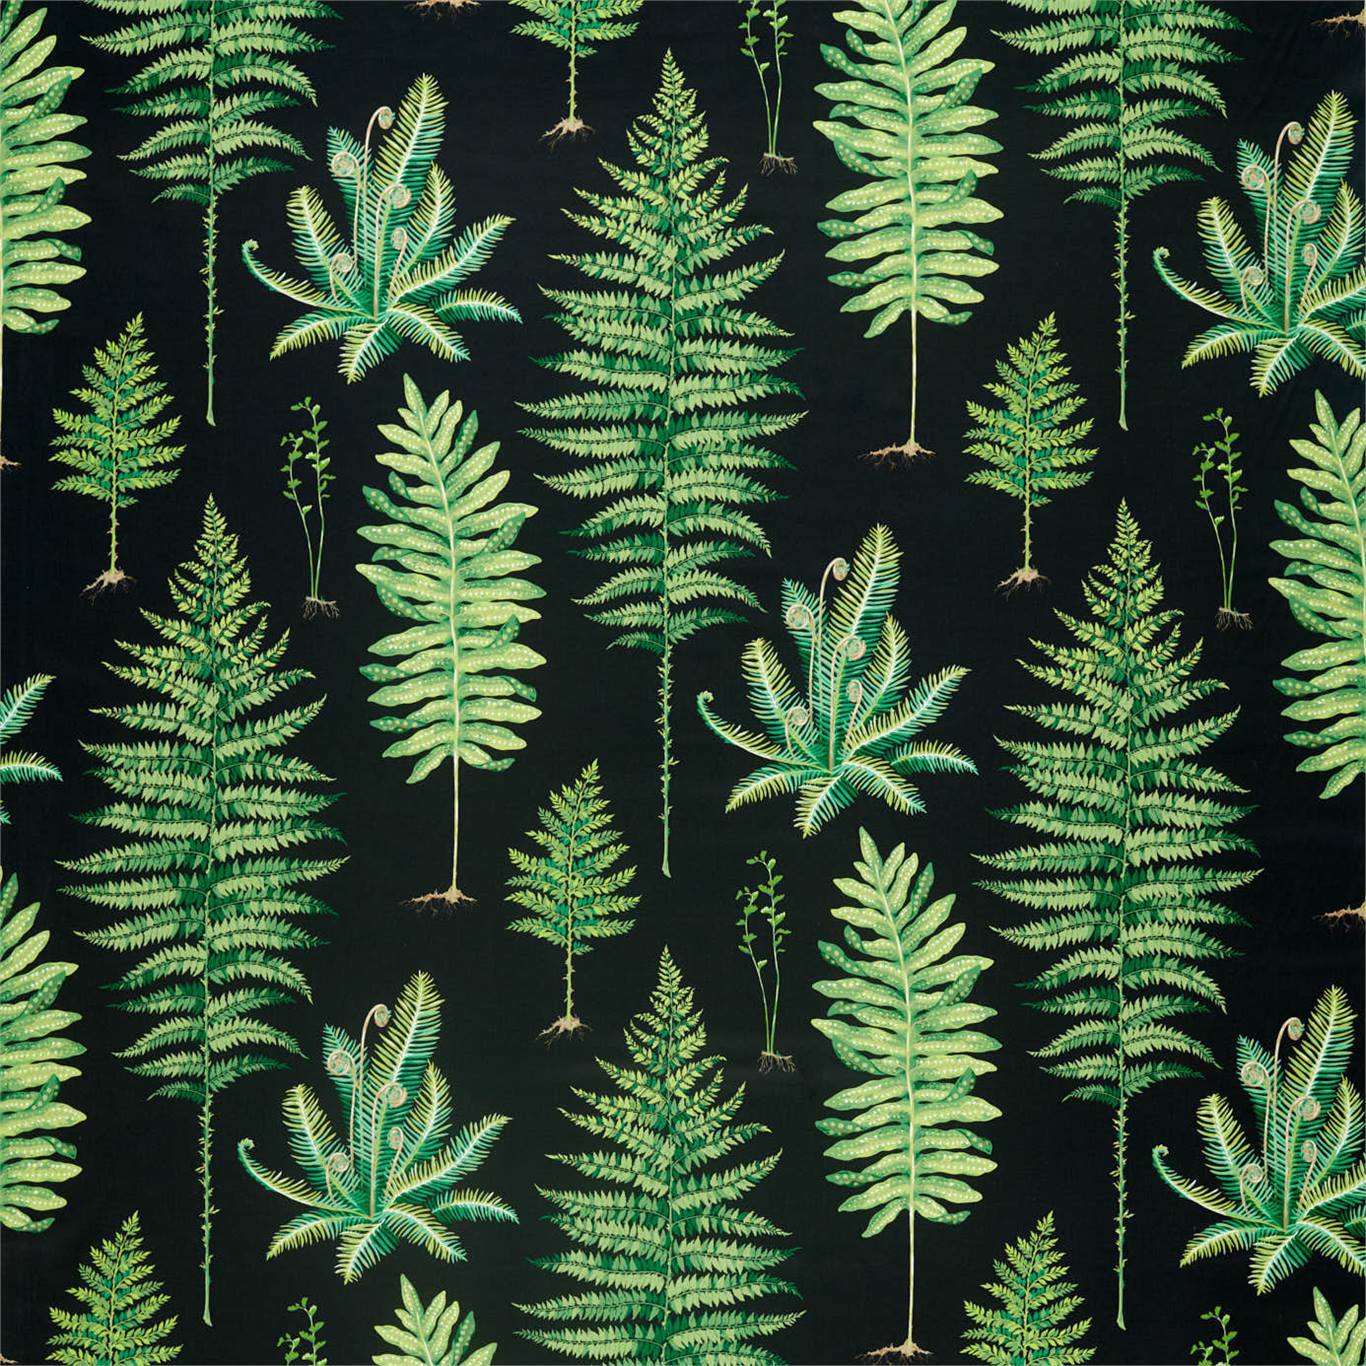 Fernery Fabric by Sanderson